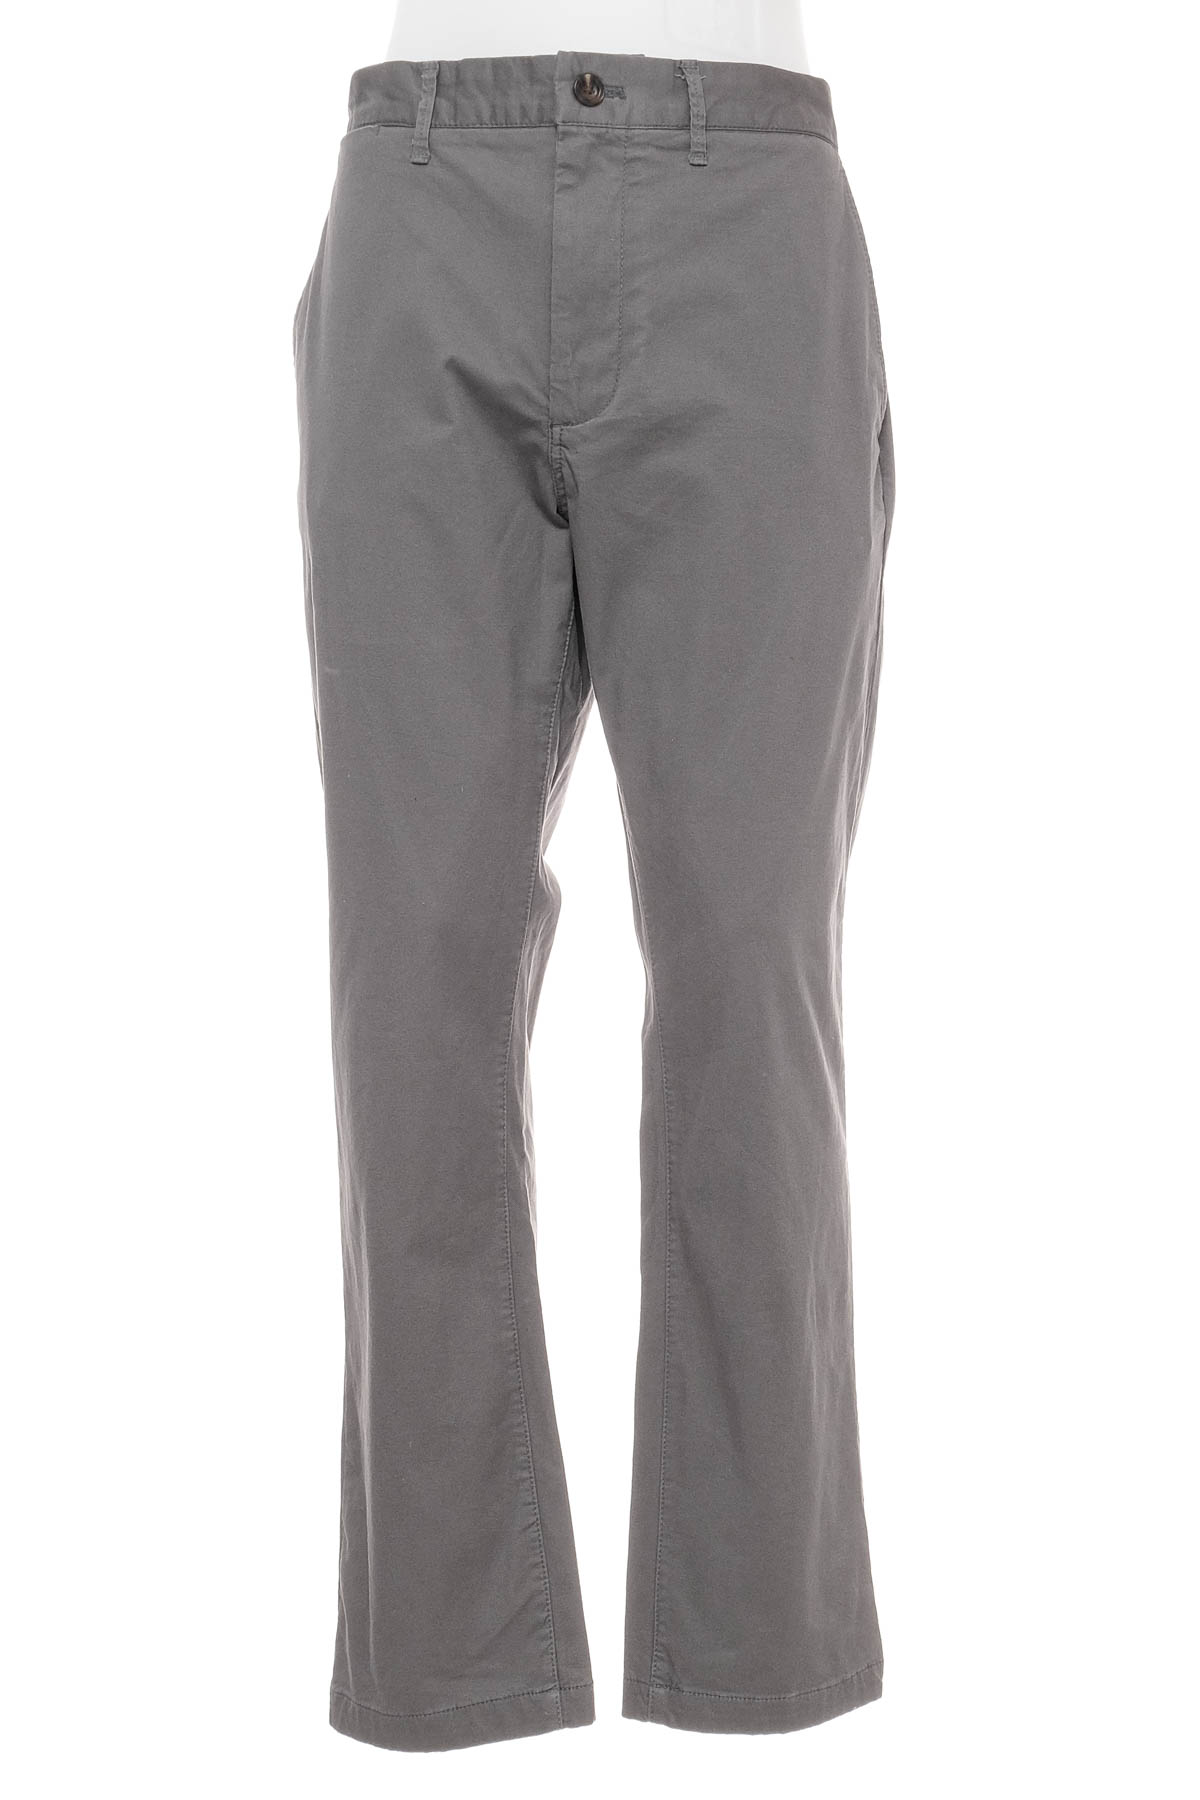 Pantalon pentru bărbați - Goodfellow & Co - 0